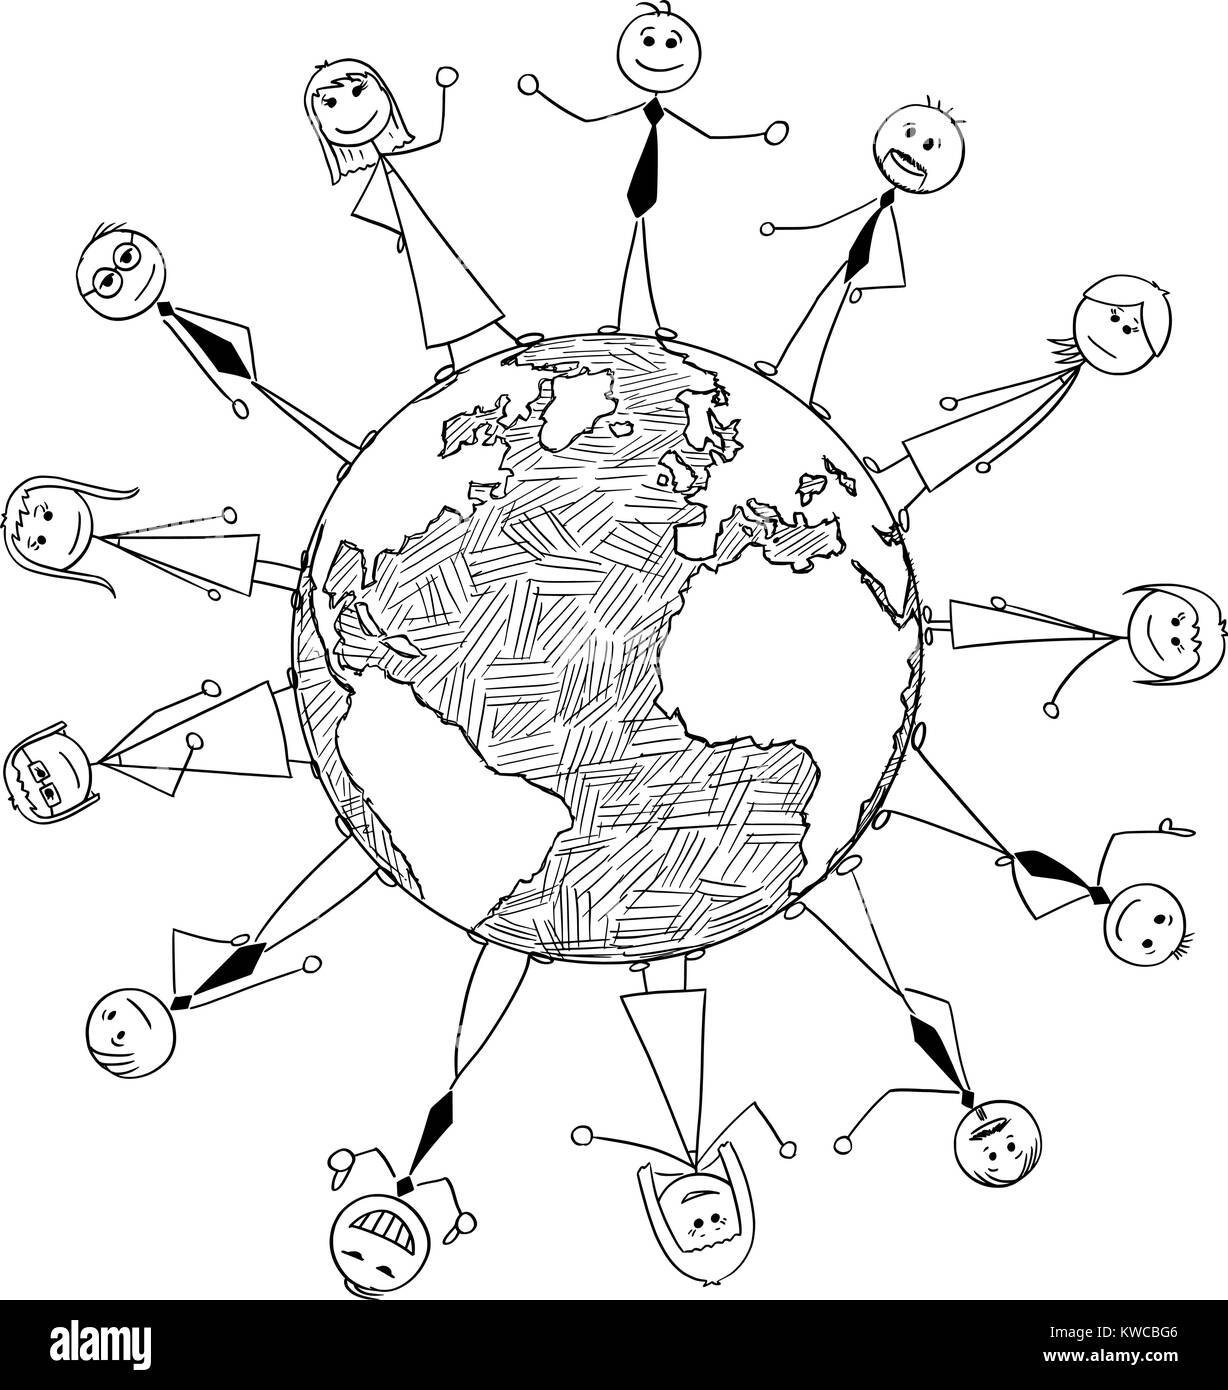 Cartoon stick man dessin illustration conceptuelle de la coopération internationale des gens d'affaires autour du globe de la planète Terre. Illustration de Vecteur